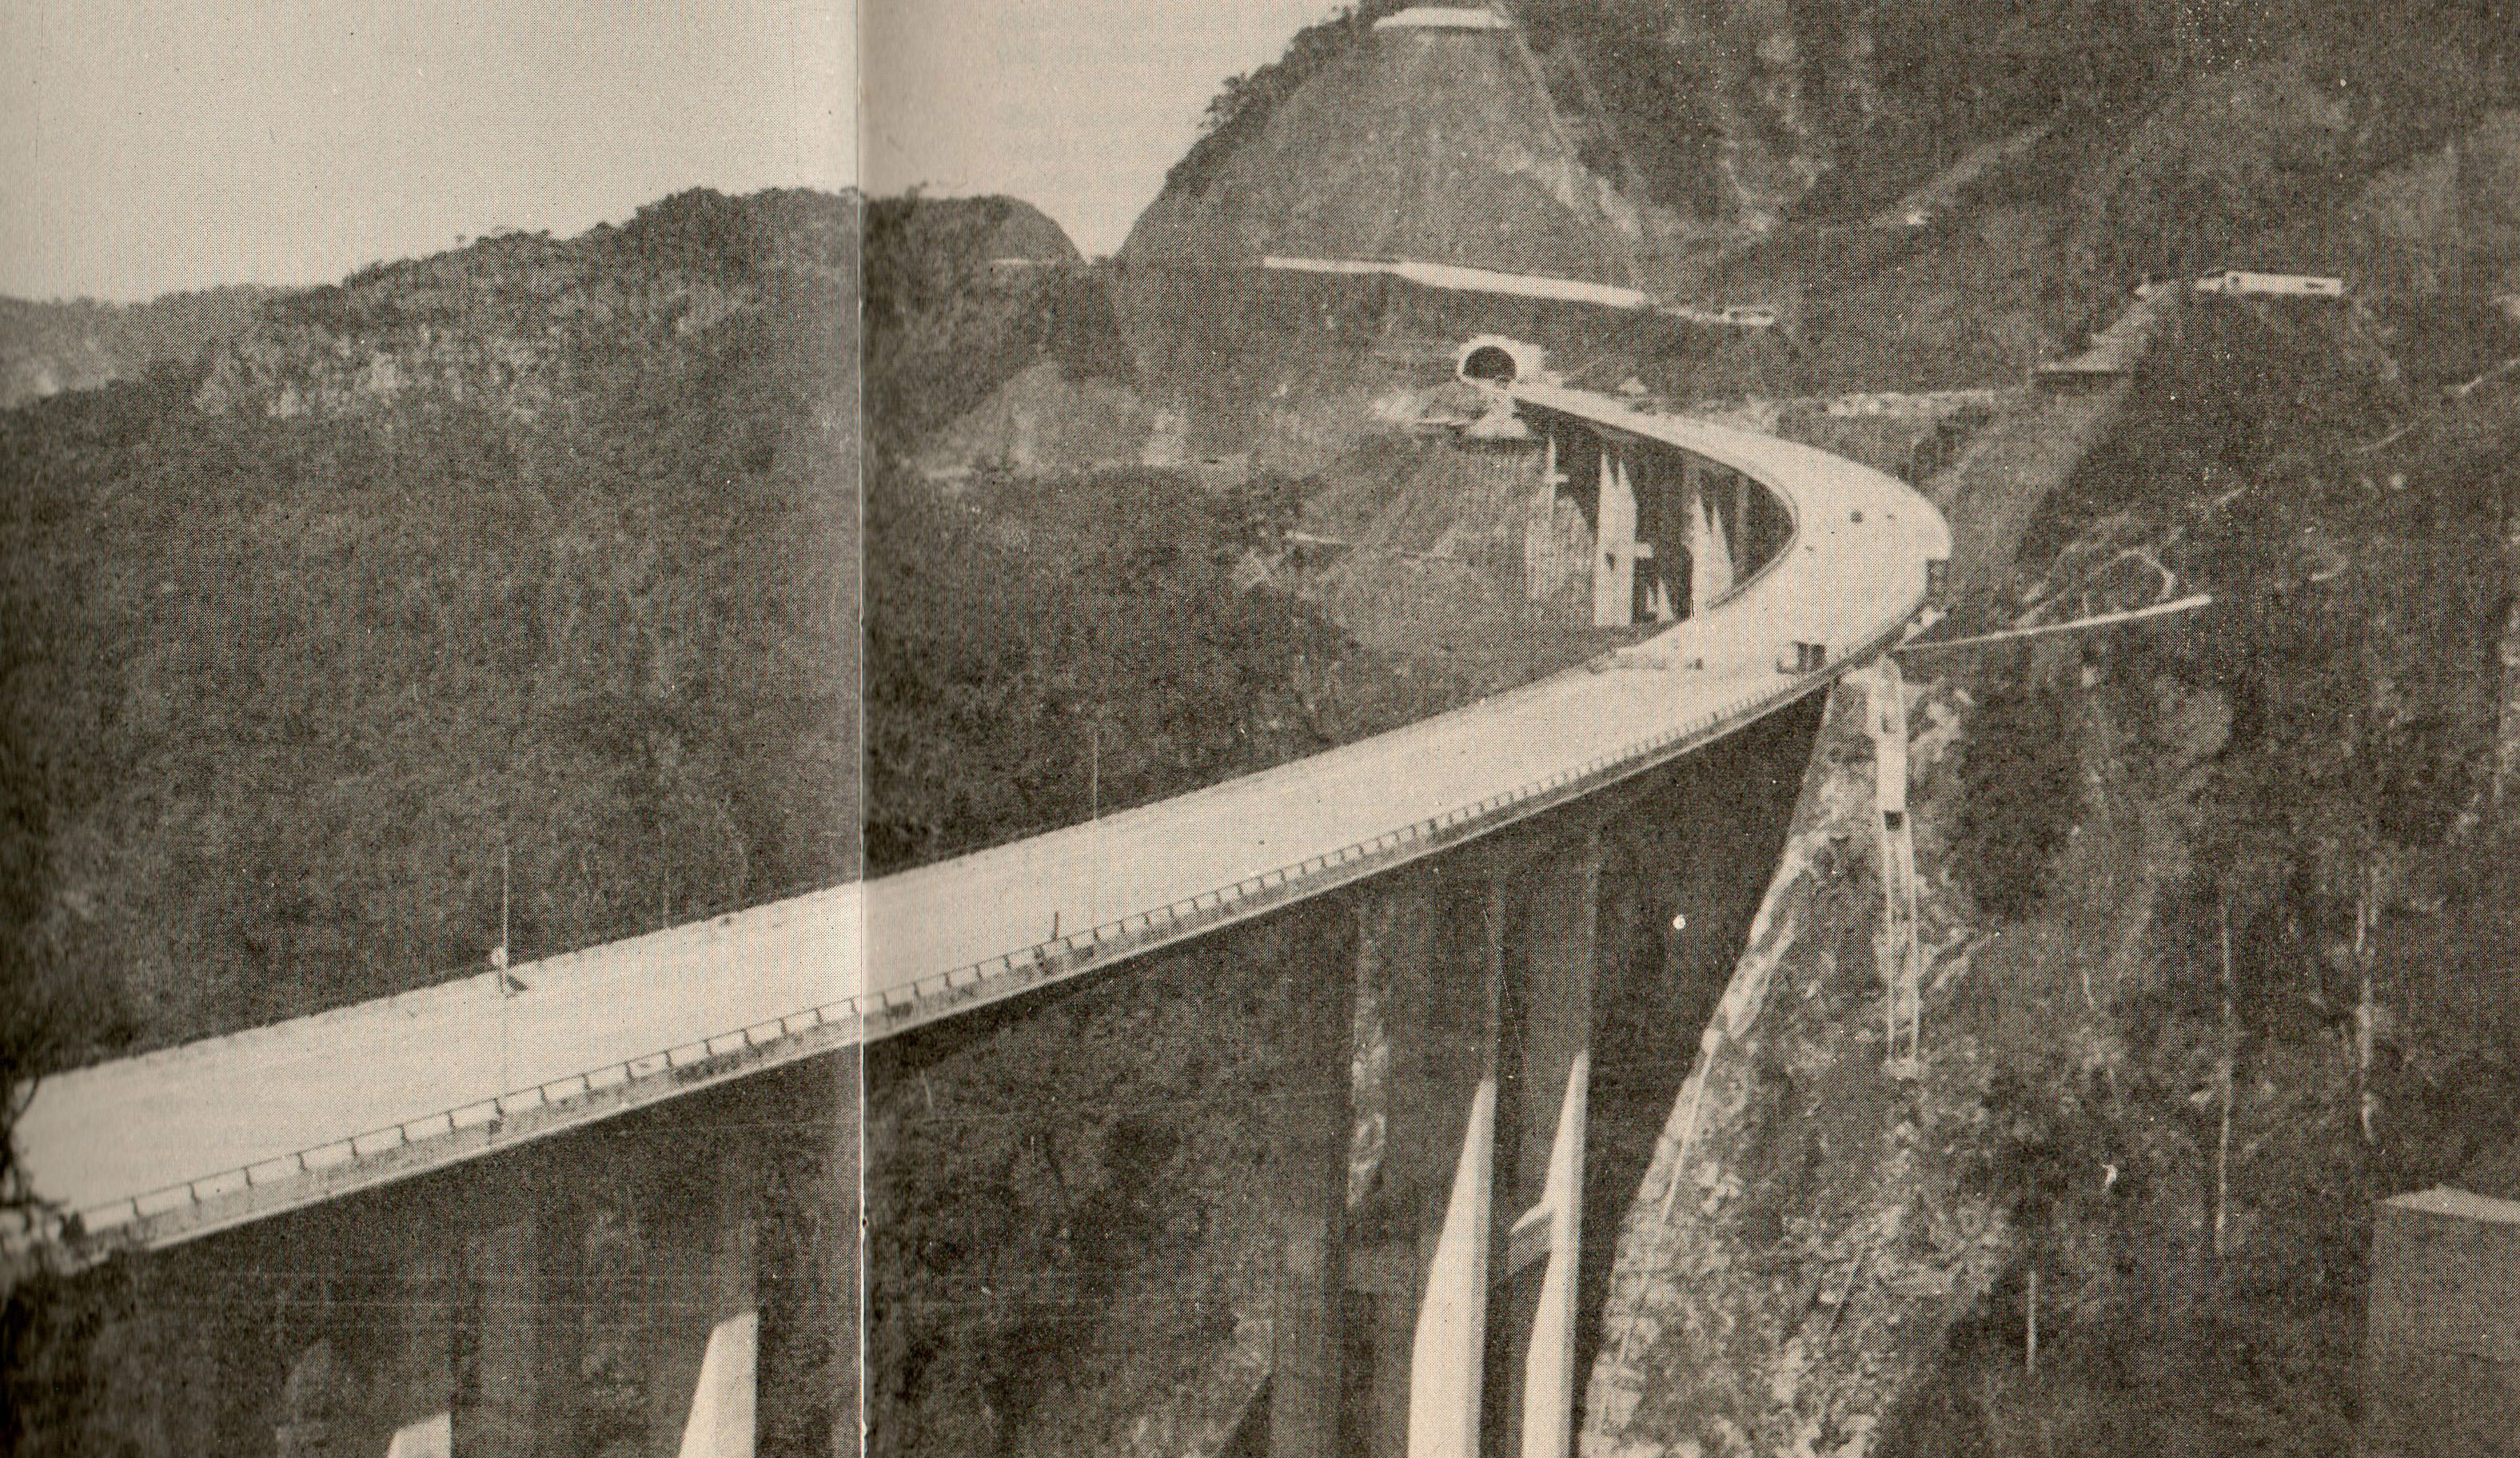 Construção da Rodovia dos Imigrantes na década de 70. Fonte: DERSA.